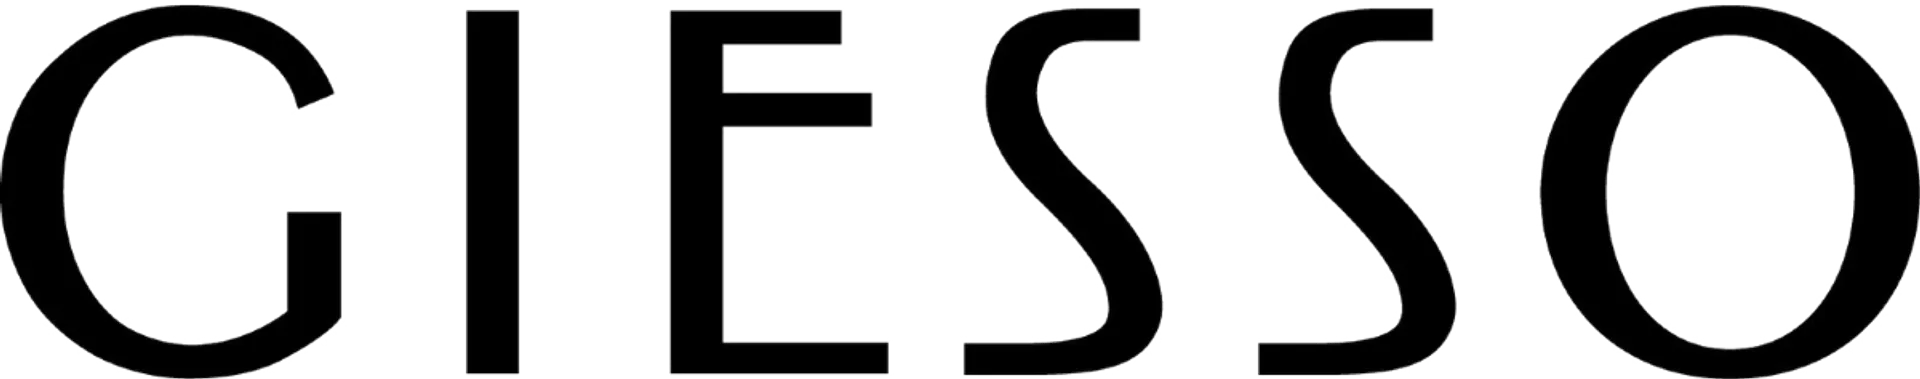 GIESSO logo de catálogo